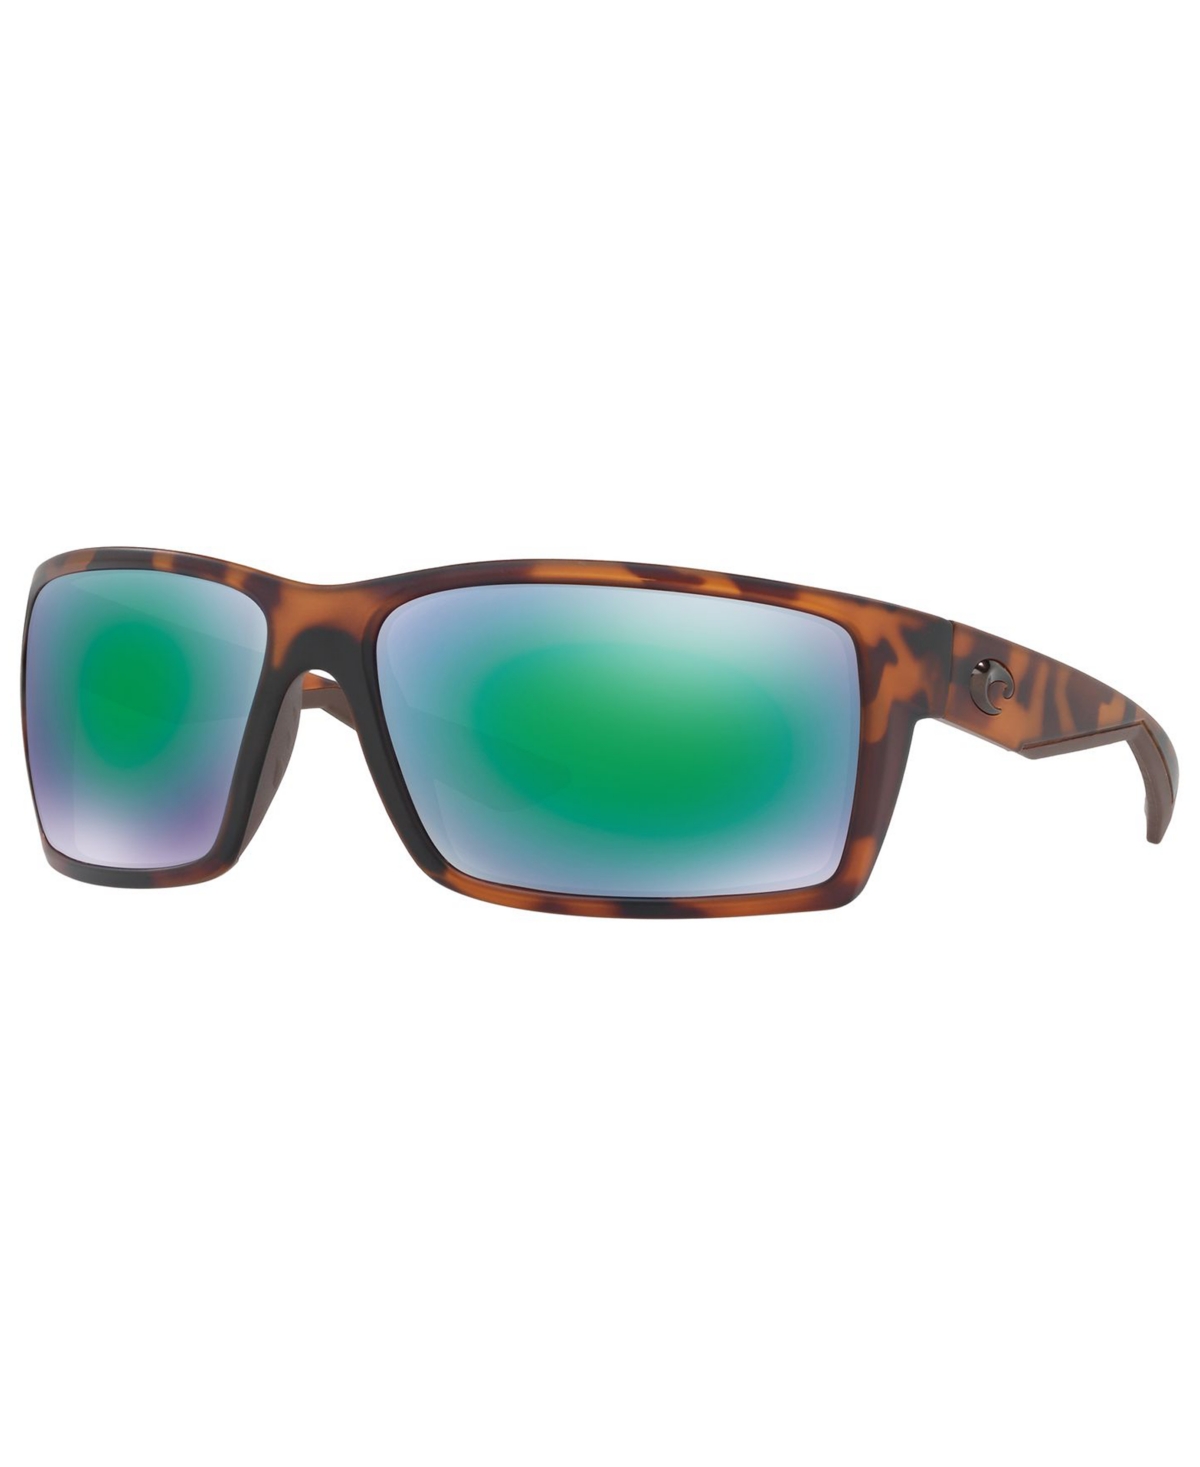 Polarized Sunglasses, Reefton 64 - TORTOISE MATTE/ GREEN MIRROR POLAR